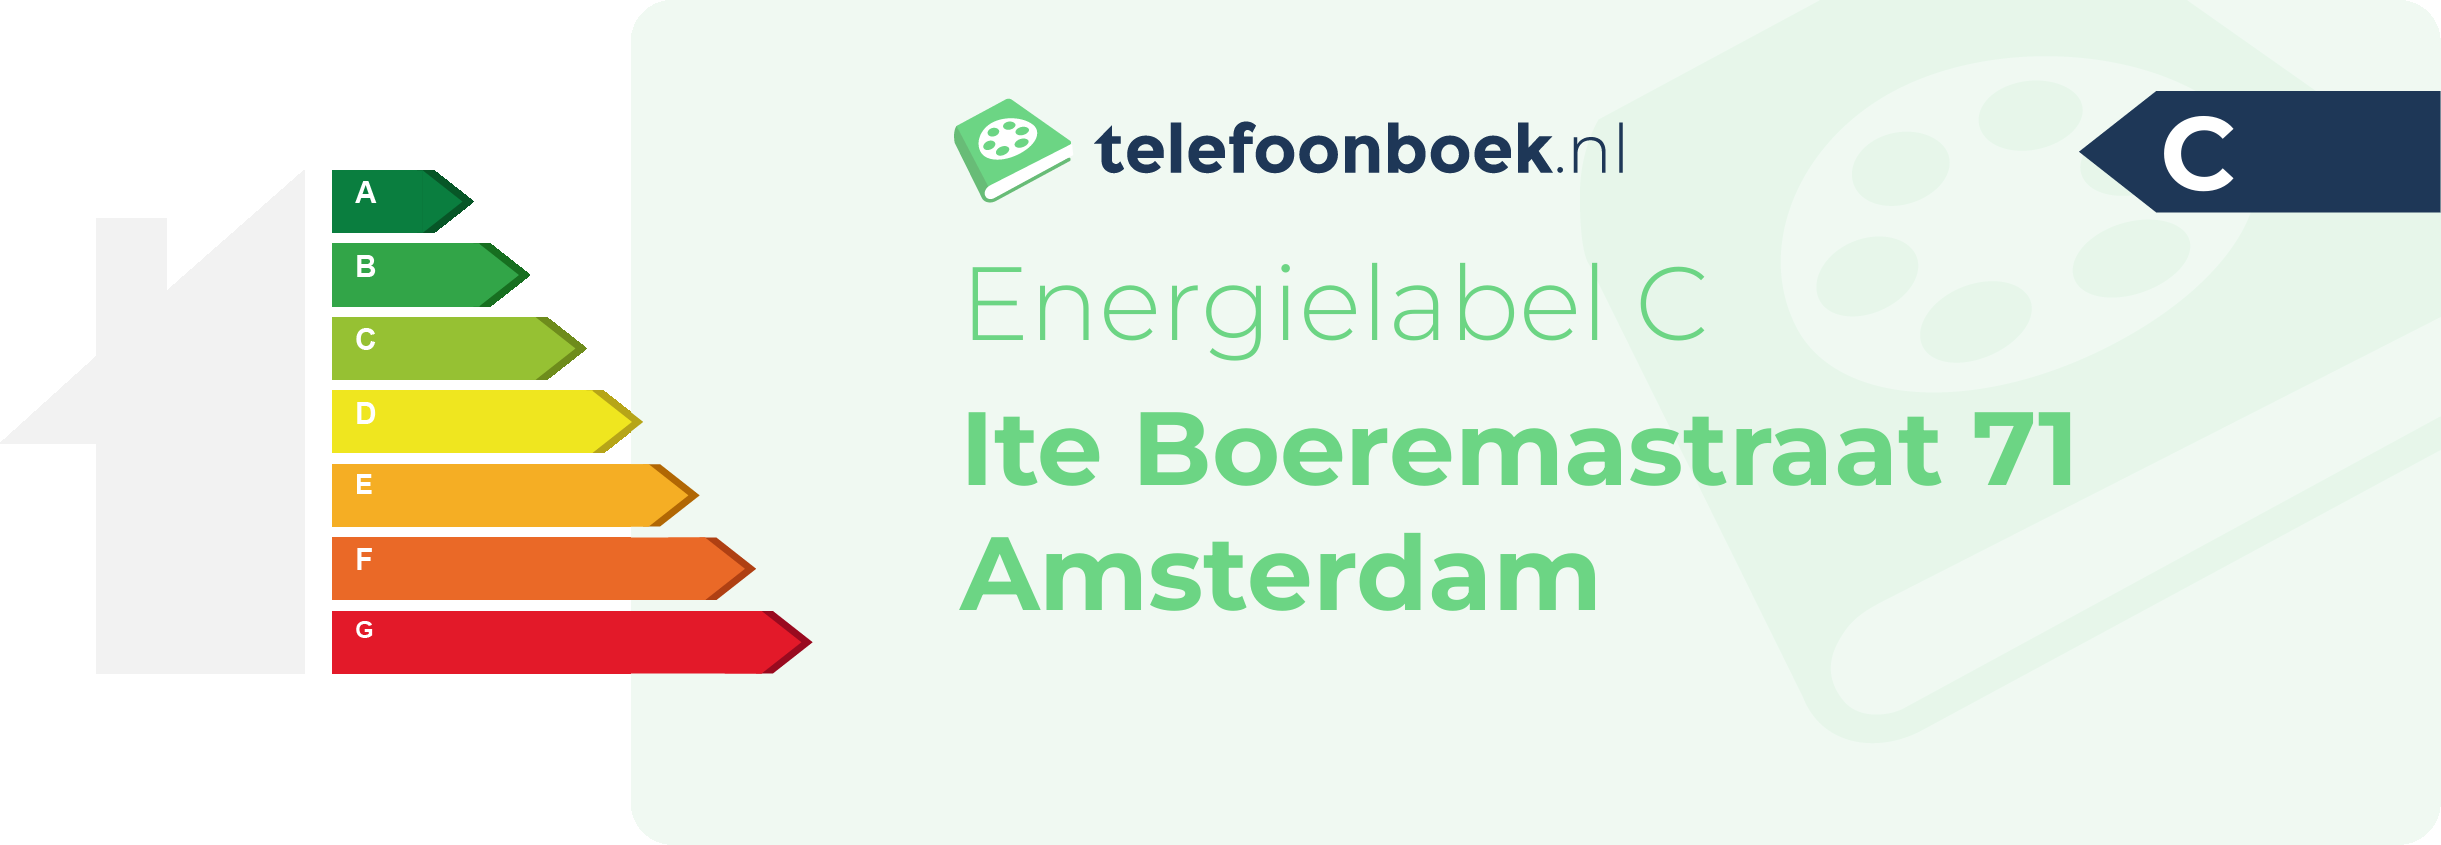 Energielabel Ite Boeremastraat 71 Amsterdam